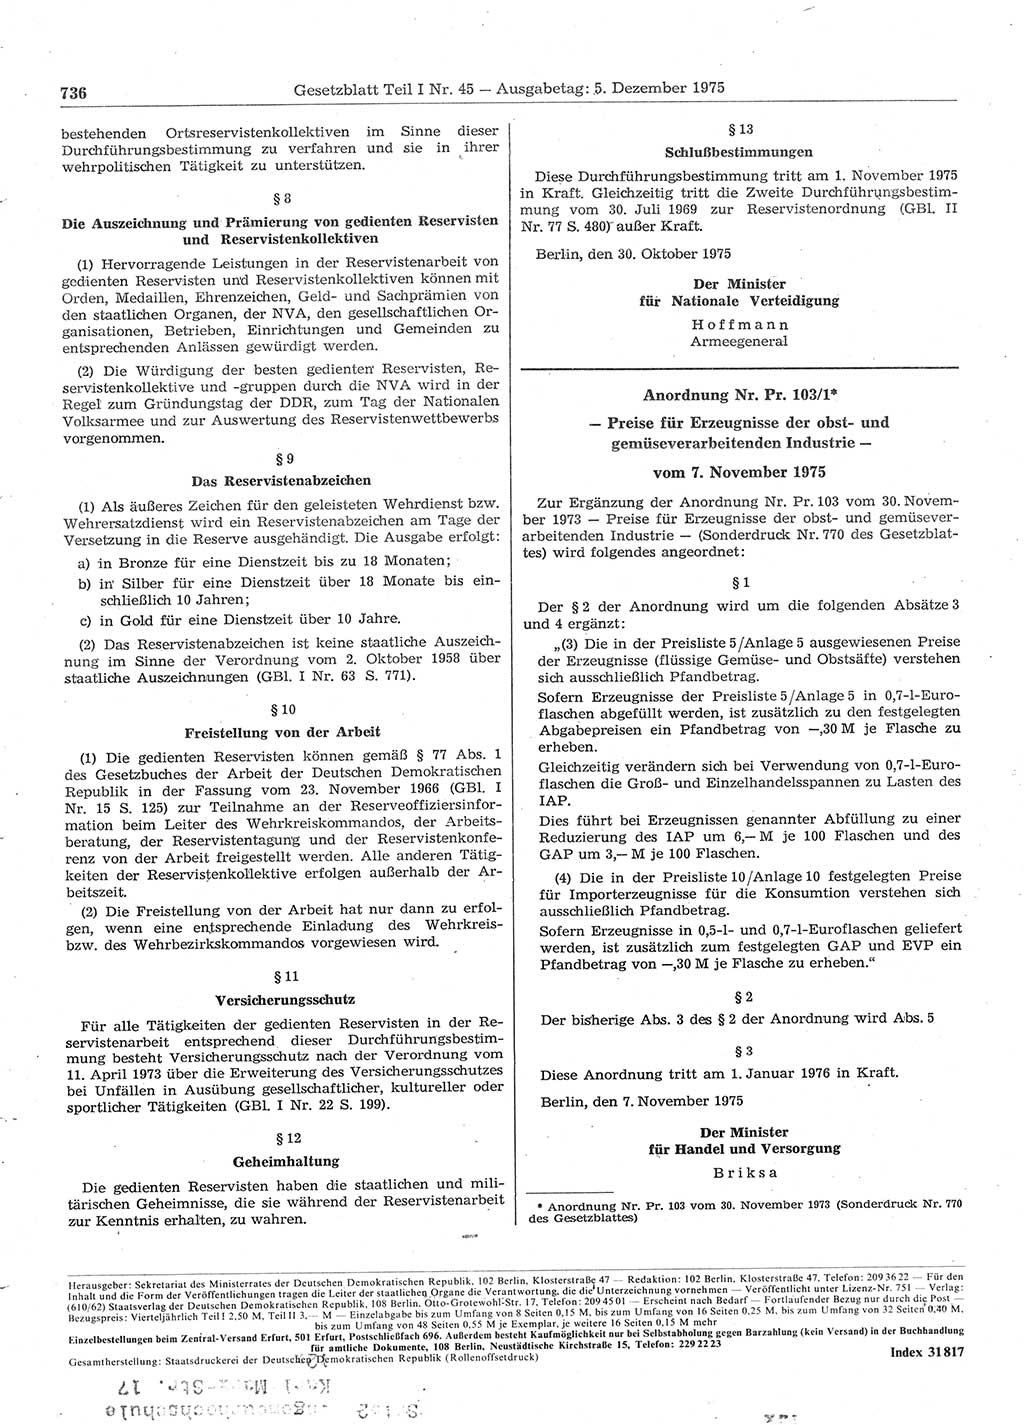 Gesetzblatt (GBl.) der Deutschen Demokratischen Republik (DDR) Teil Ⅰ 1975, Seite 736 (GBl. DDR Ⅰ 1975, S. 736)